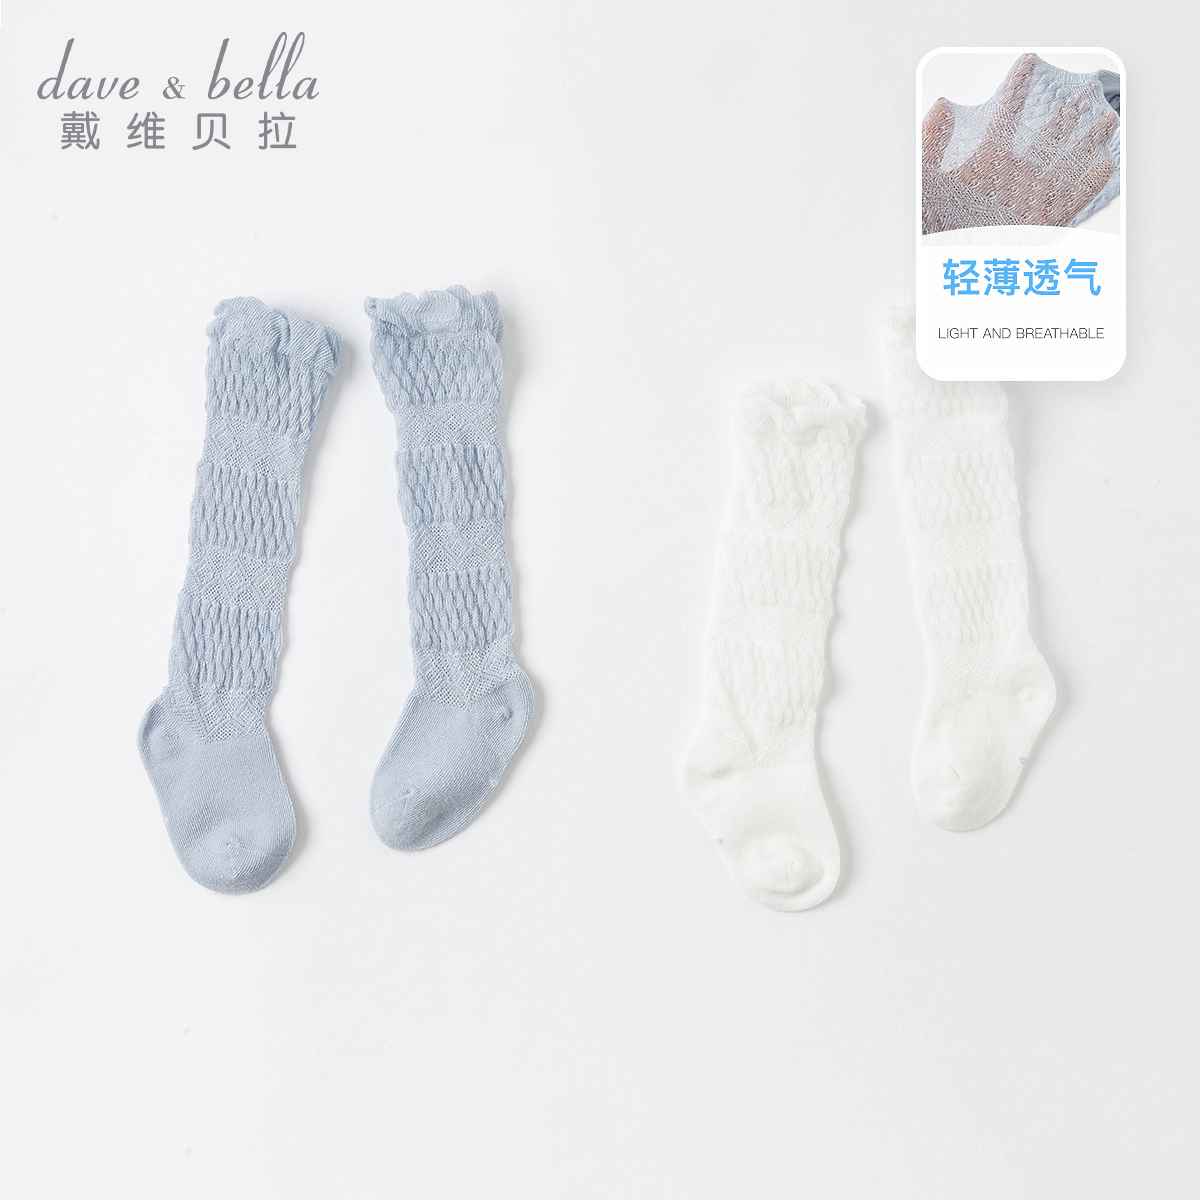 戴维贝拉davebella儿童袜子 夏季新款女童薄款弹力透气防蚊长筒袜